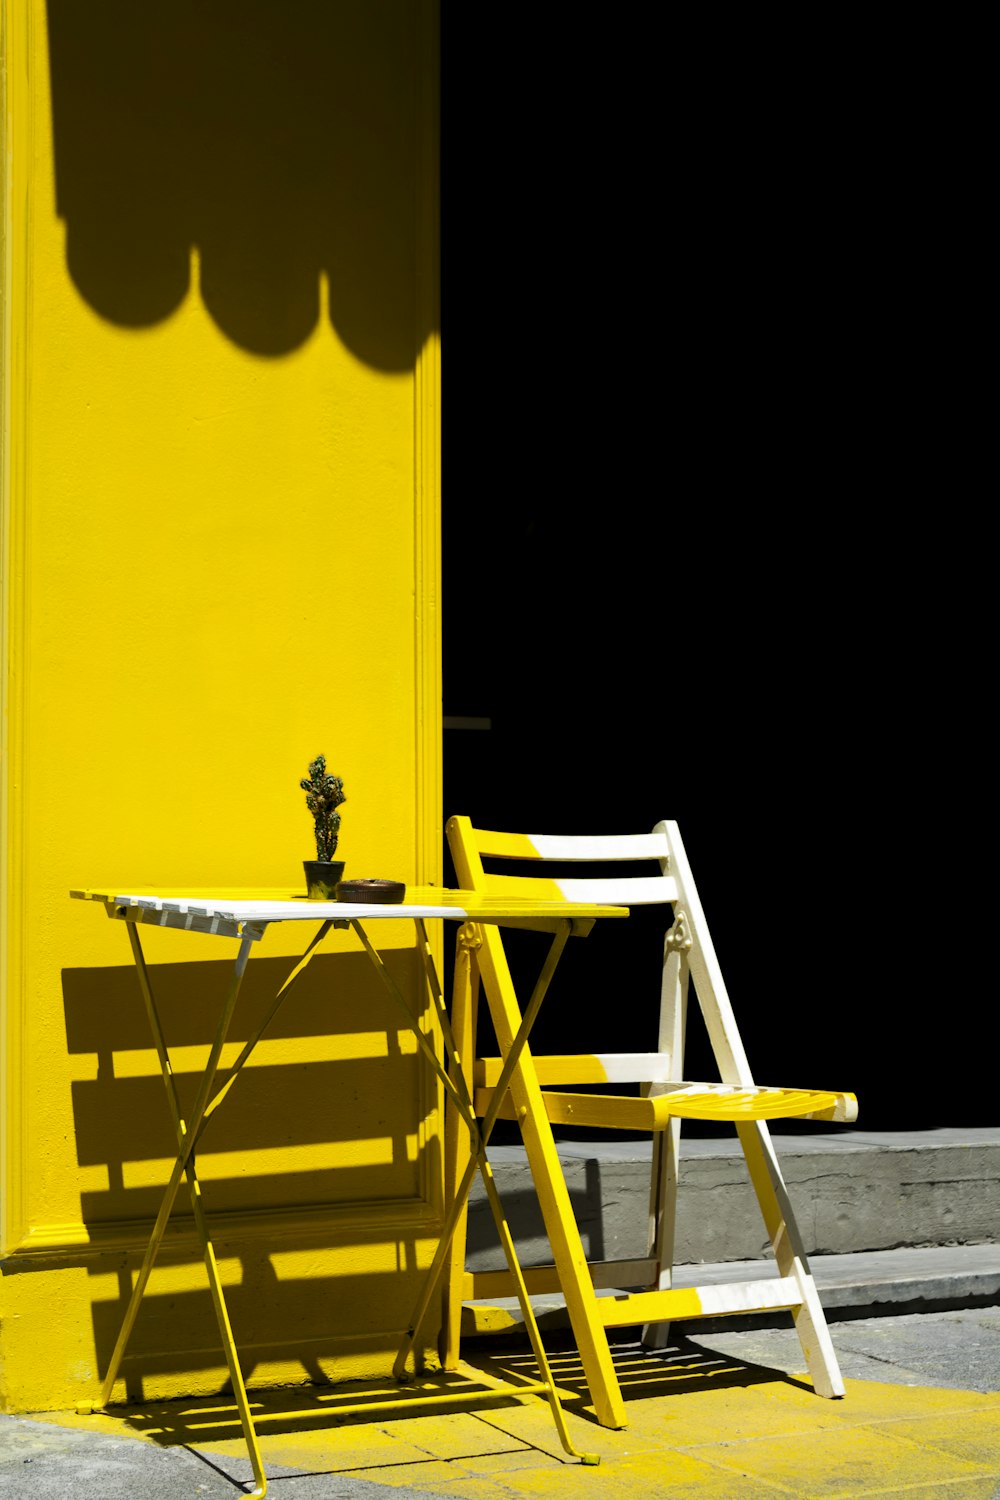 Table et chaise pliantes près du mur jaune